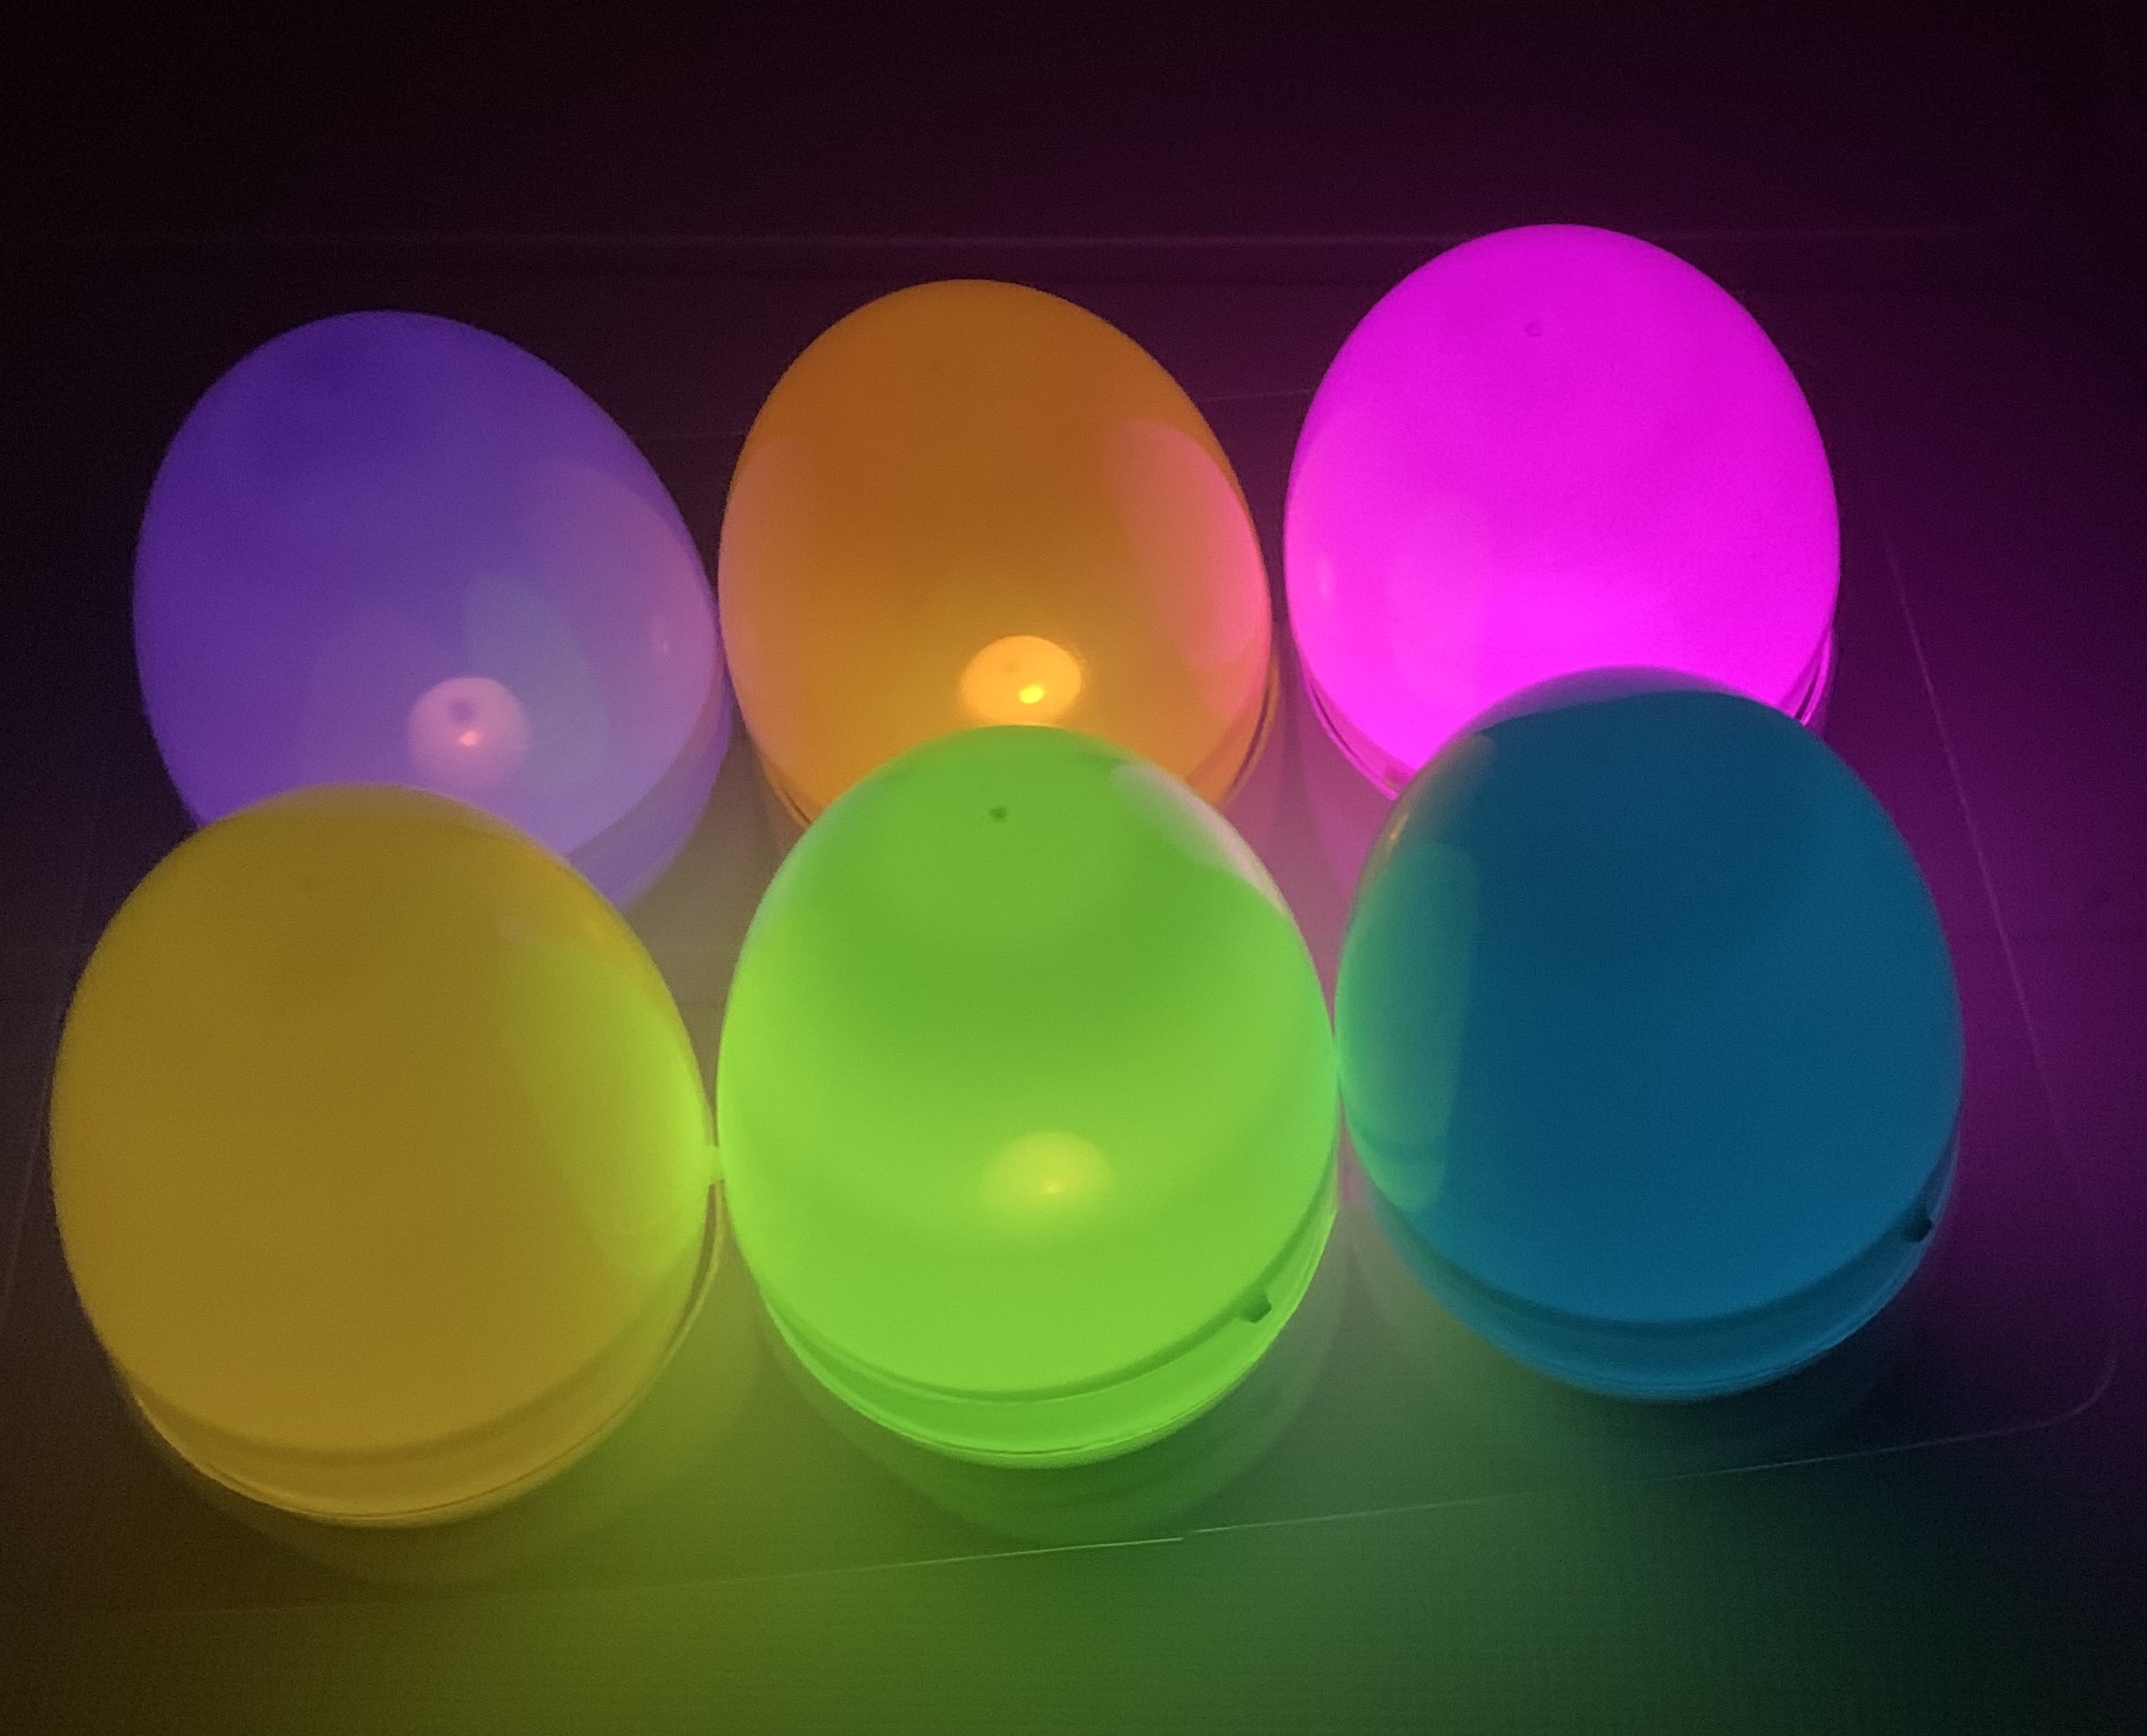 Light-up Easter eggs